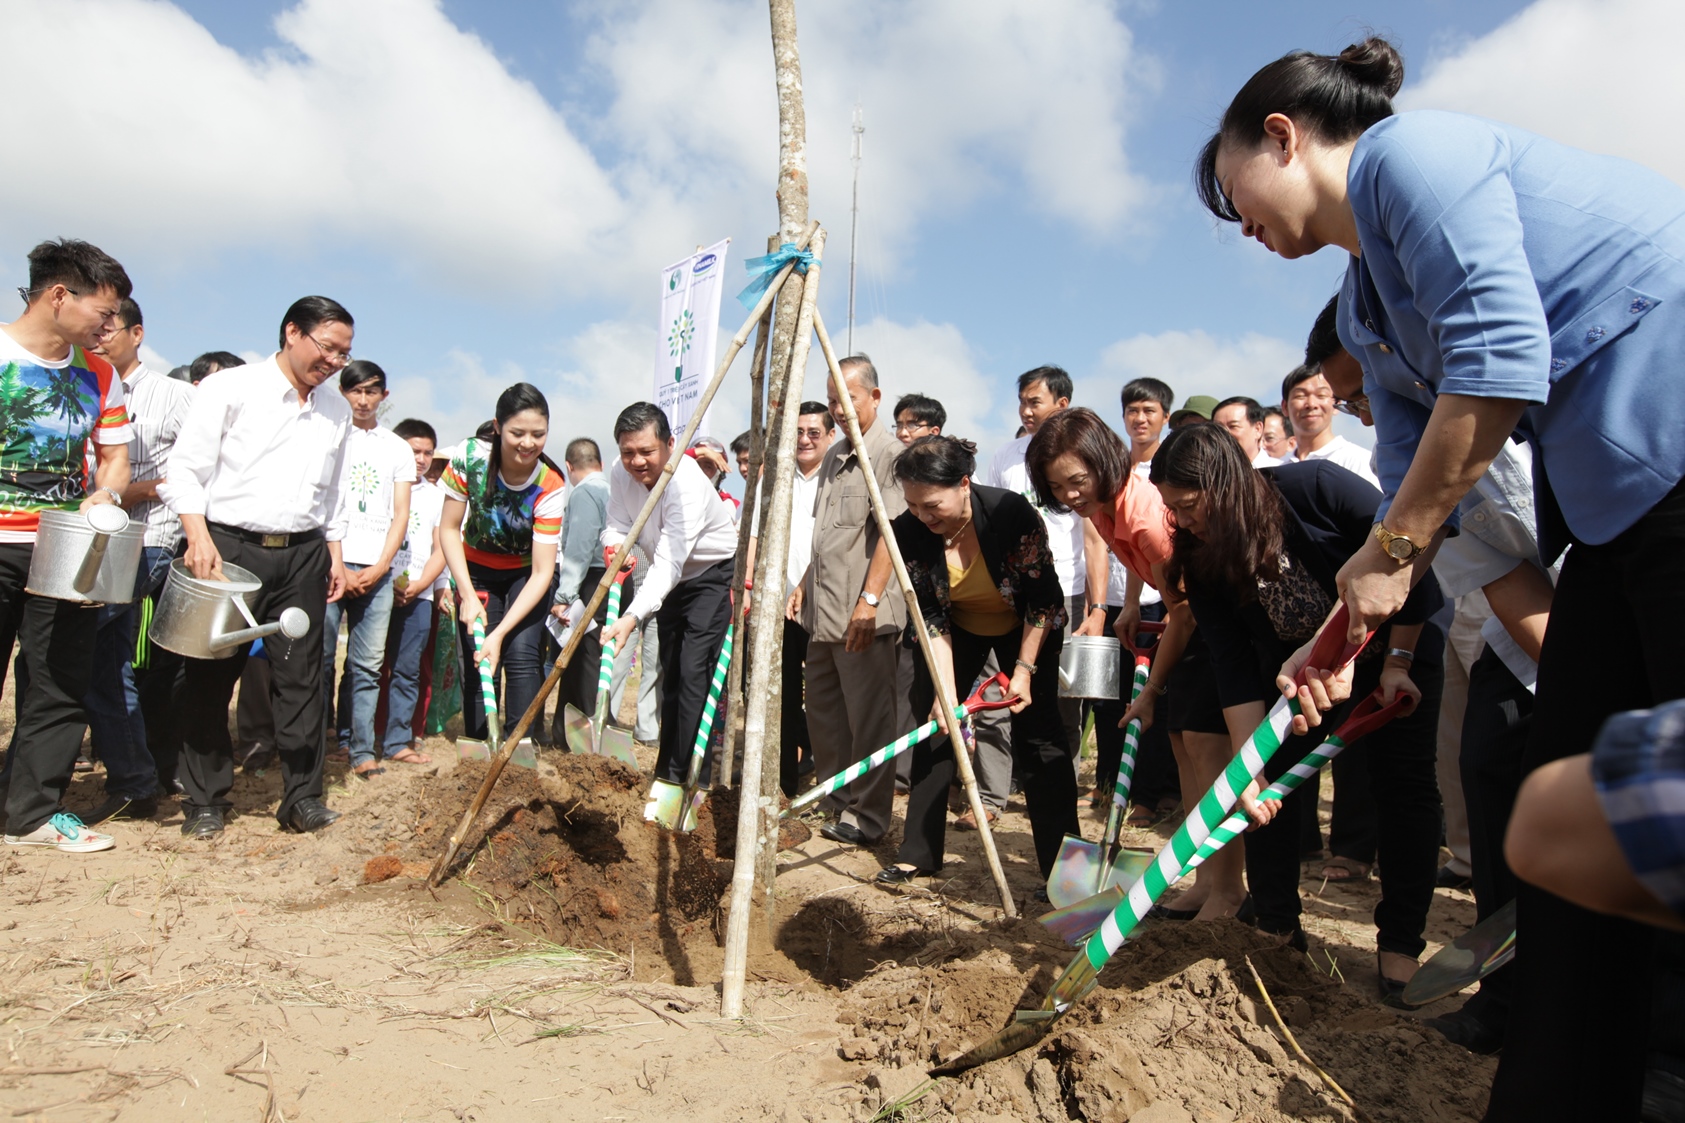 “Quỹ 1 triệu cây xanh cho Việt Nam” trồng cây tại Khu di tích đường Hồ Chí Minh trên biển, tỉnh Bến Tre